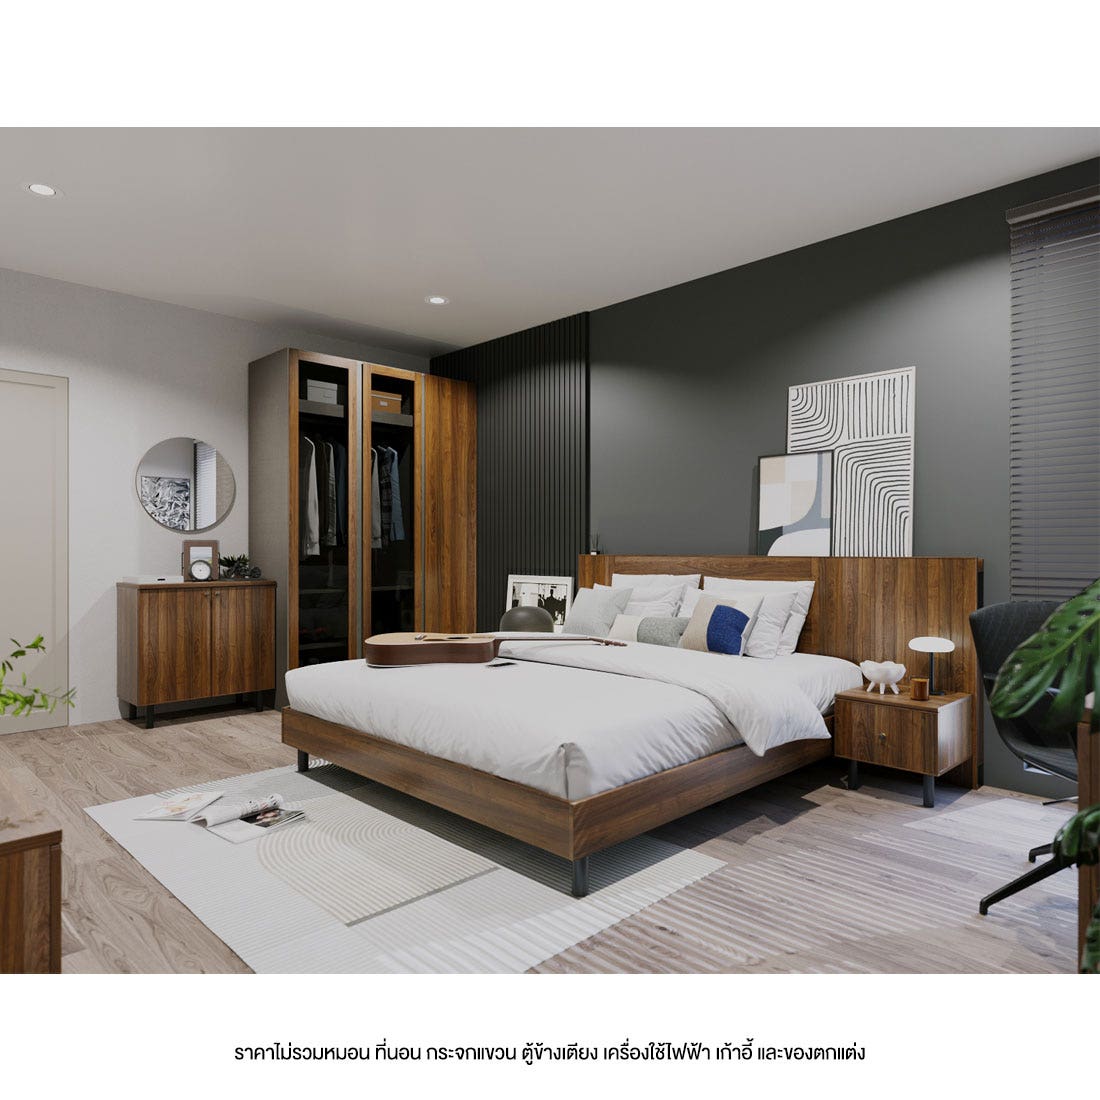 ชุดห้องนอน 5 ฟุต รุ่น Kumamoto &  ตู้ Blox 150 ซม. สีไม้เข้ม01